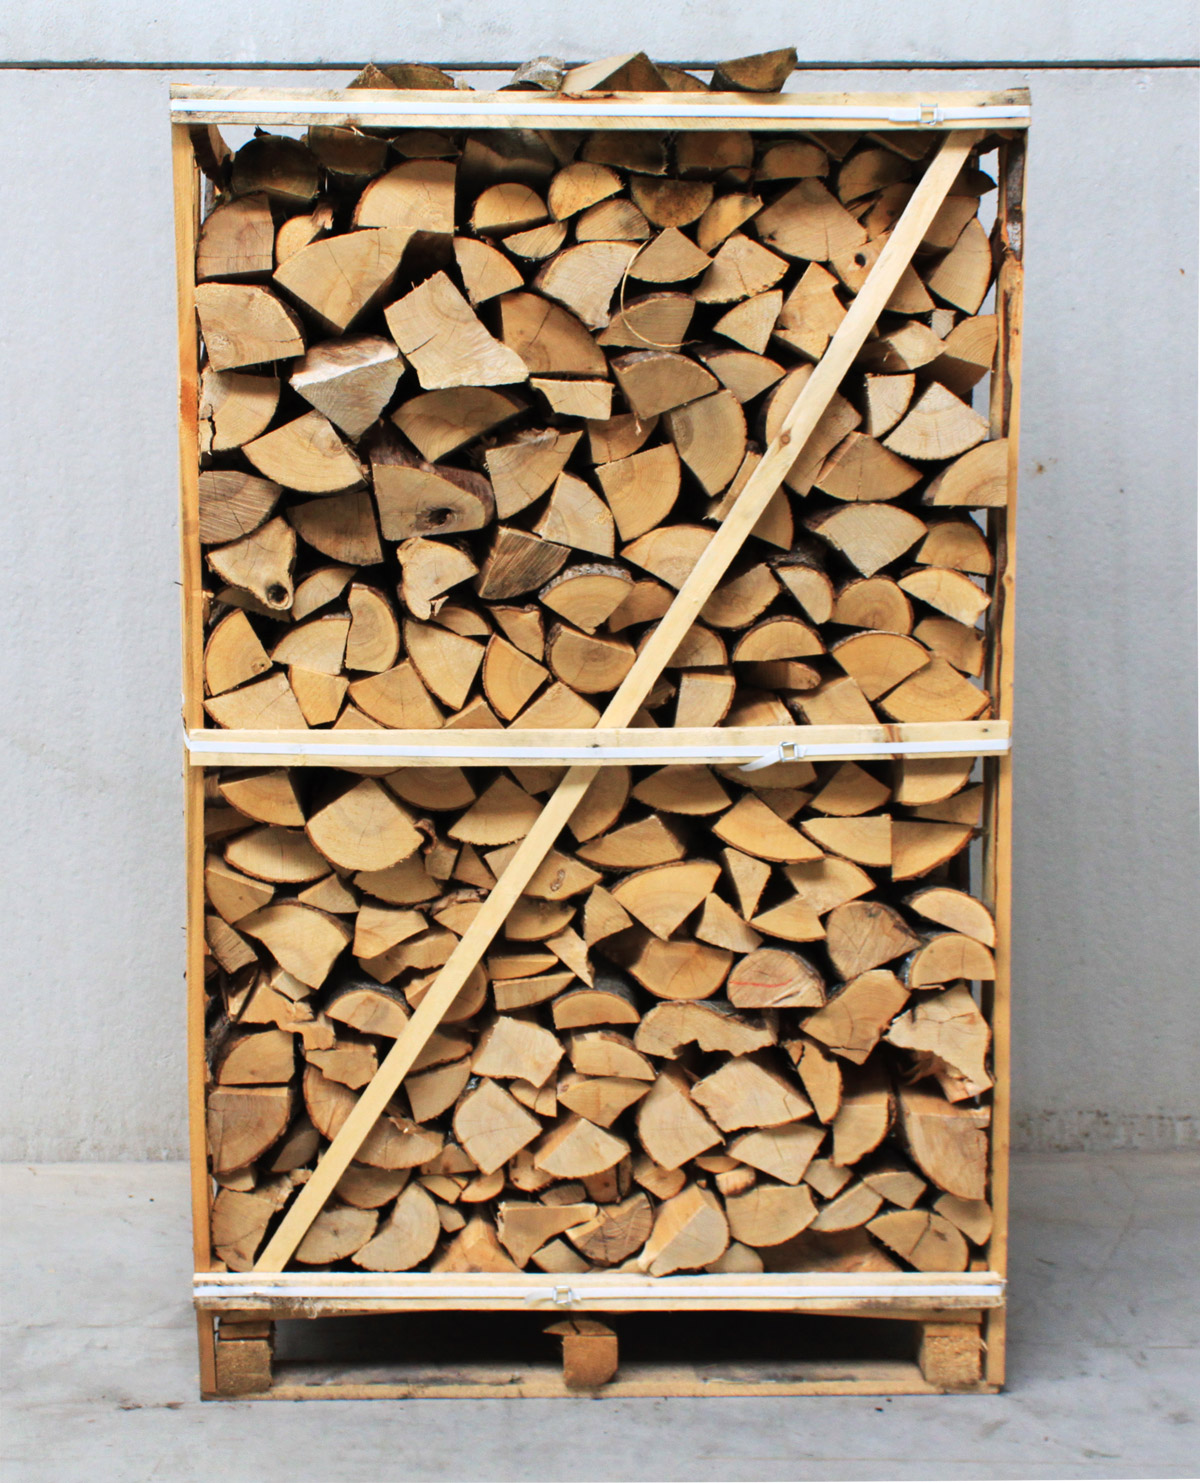 Box 2,5 stères 50cm bois de chauffage sec - palette de bois coupé